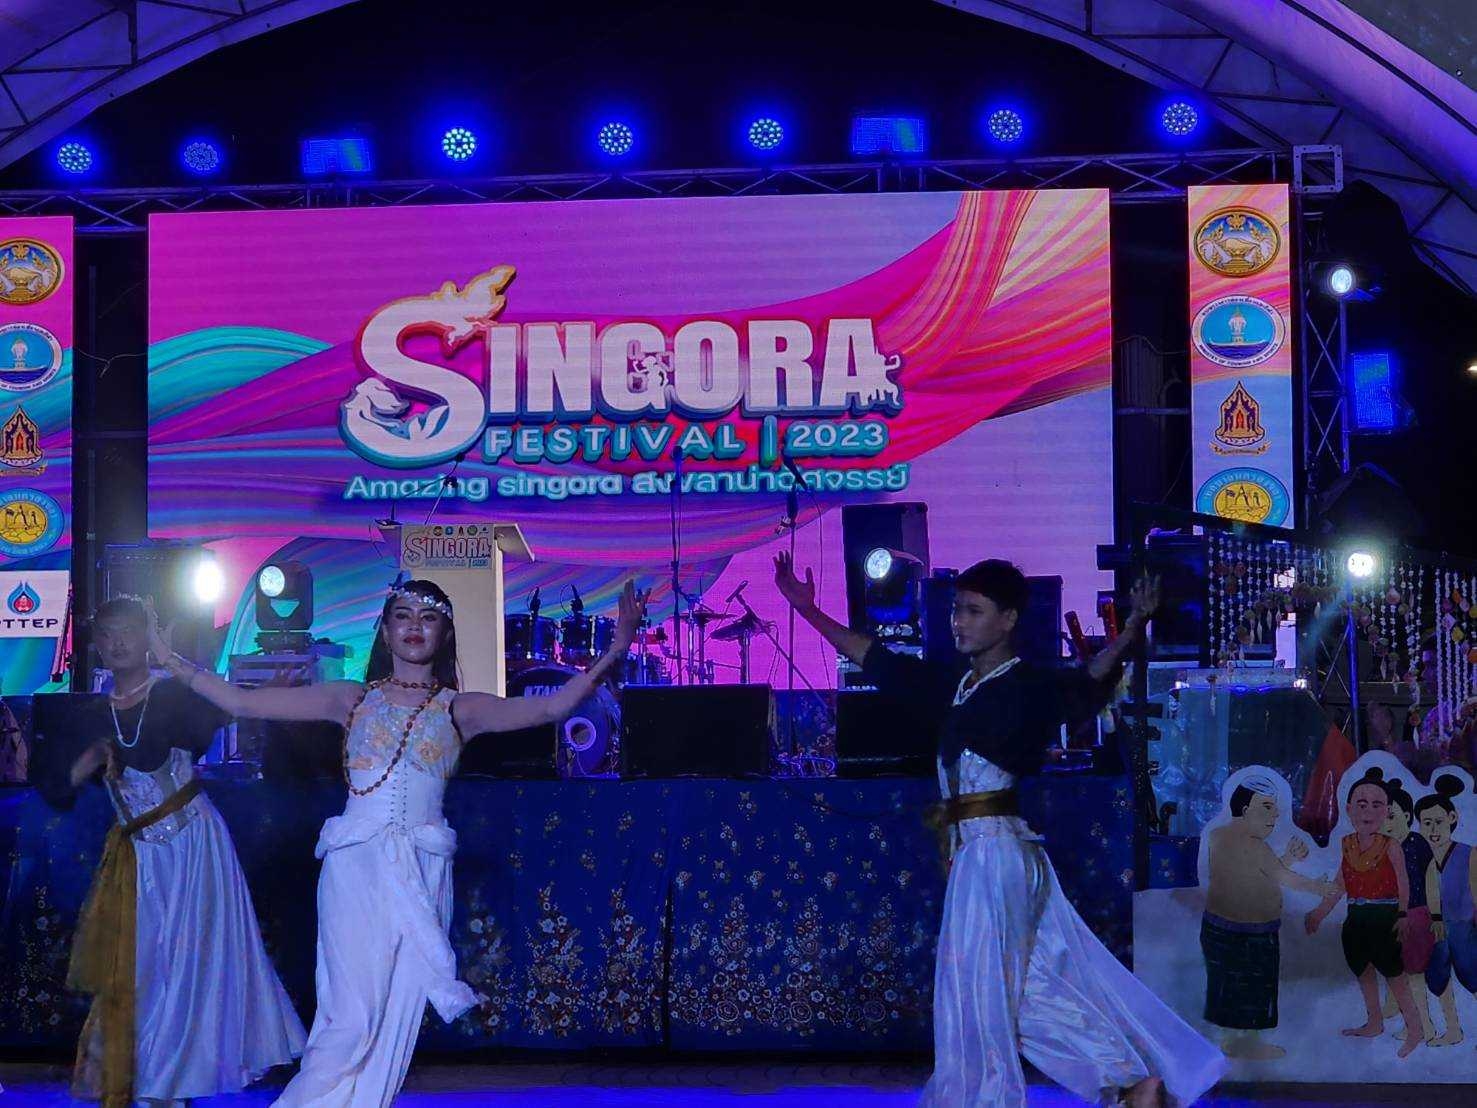 หอการค้าจังหวัดสงขลา ร่วมเป็นเกียรติในพิธีเปิดงาน SINGORA FESTIVAL 2023 Amazing Singora สงขลาน่าอัศจรรย์